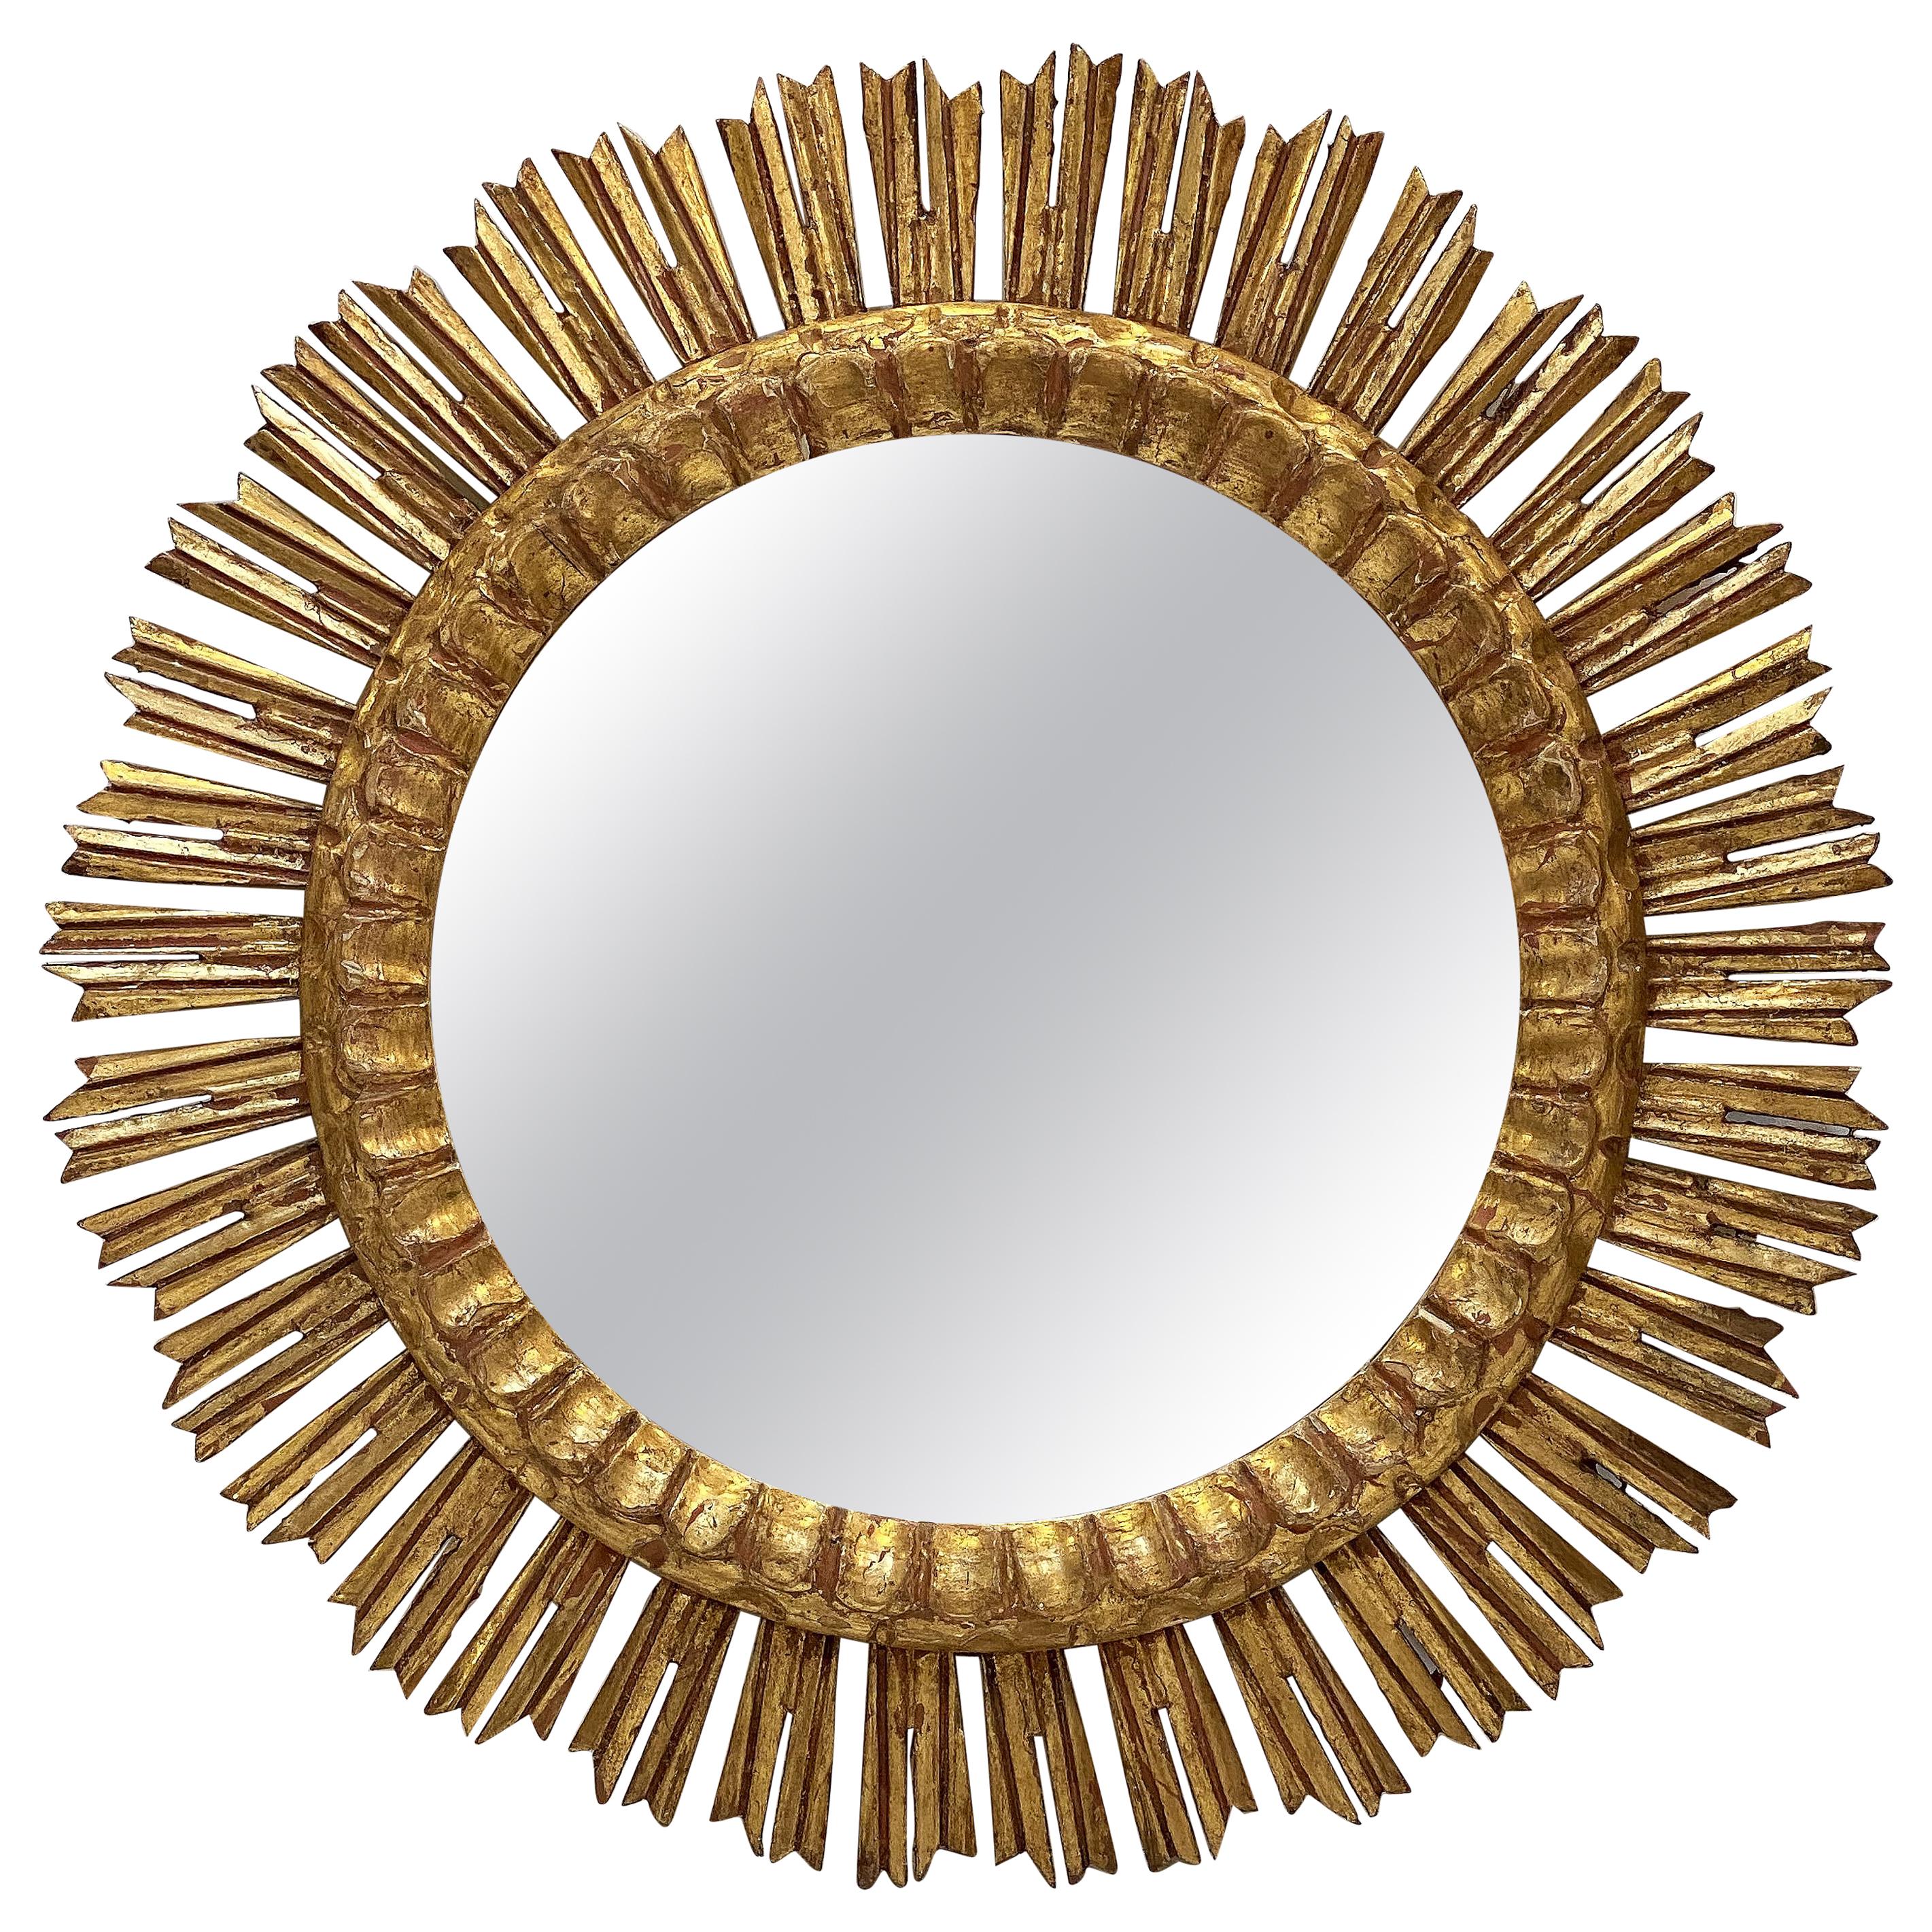 Large French Gilt Starburst or Sunburst Mirror (Diameter 24 1/4)